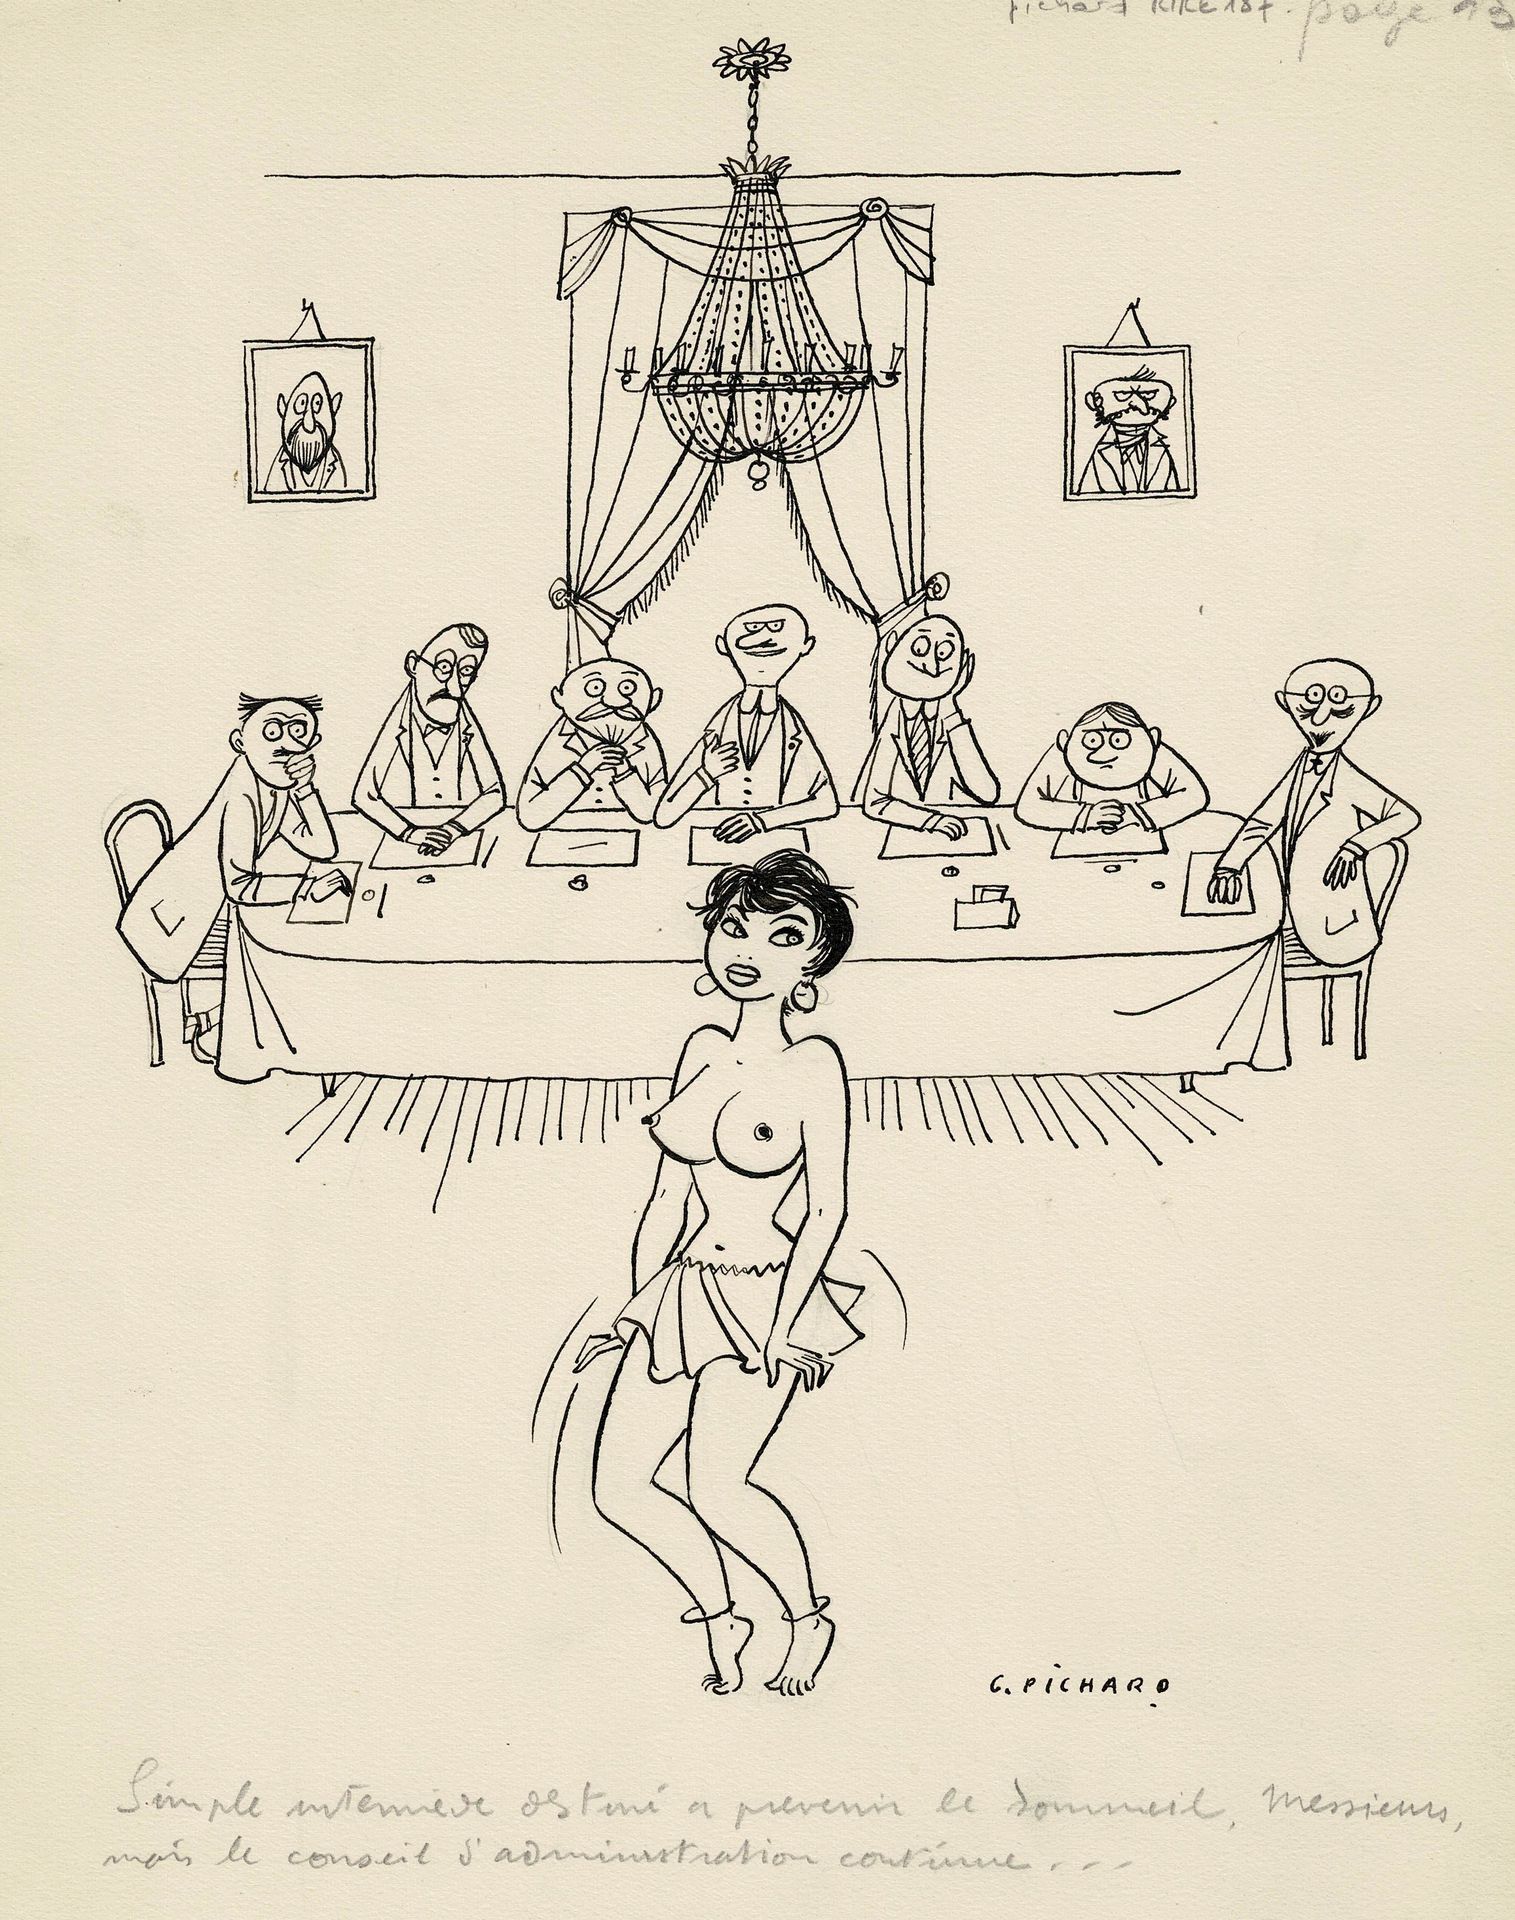 Georges PICHARD 
Originalzeichnung in Tusche. Maße: 35,5 cm x 26,5 cm.